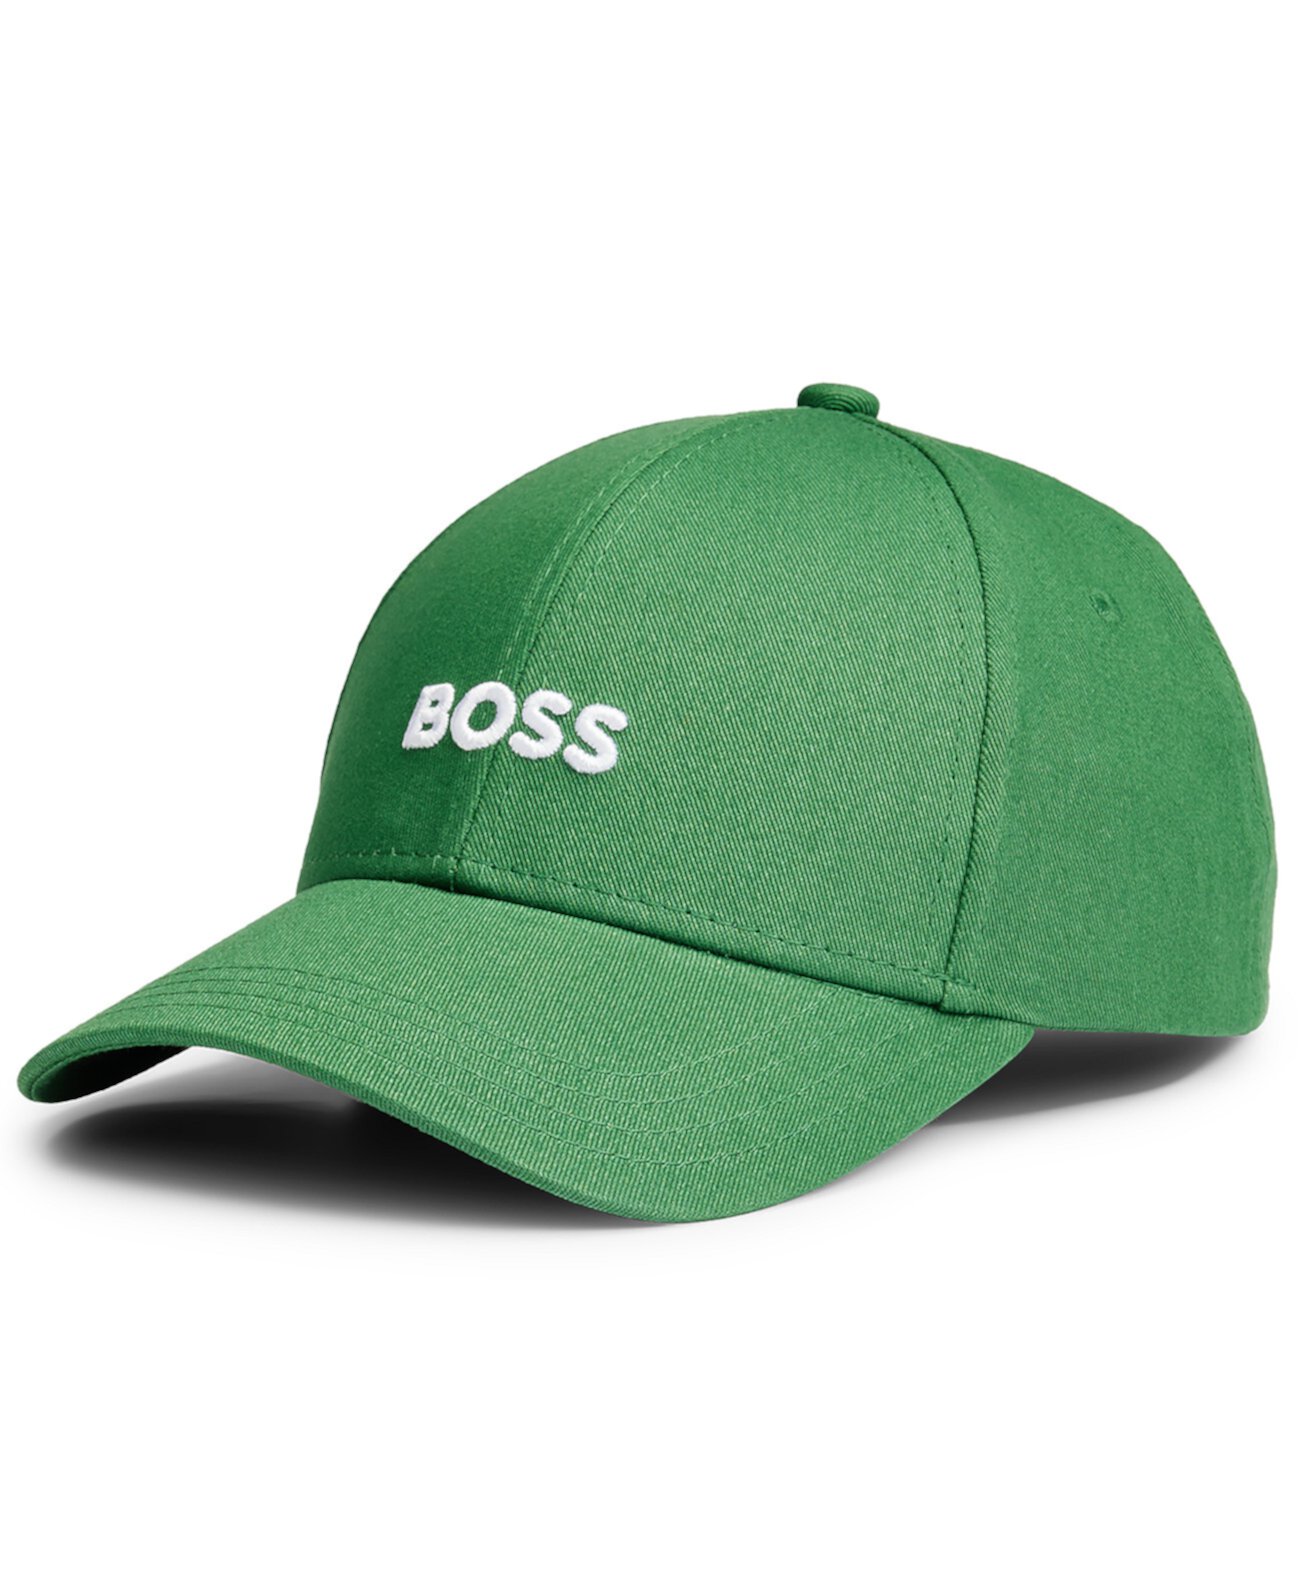 Мужская кепка с вышитым логотипом BOSS